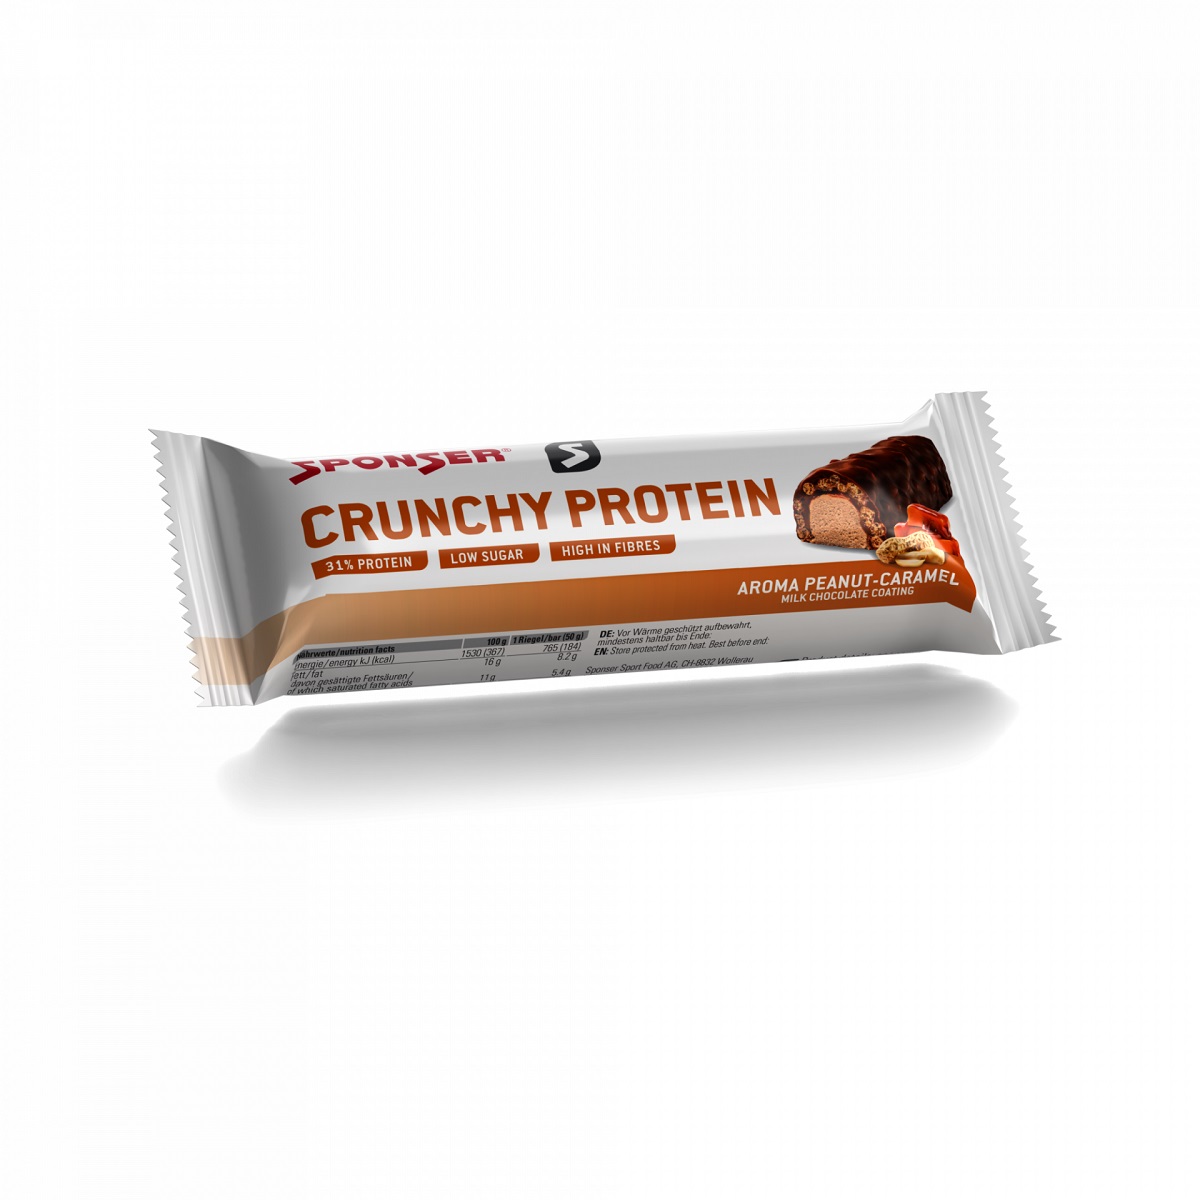 Crunchy Protein Peanut-Caramel